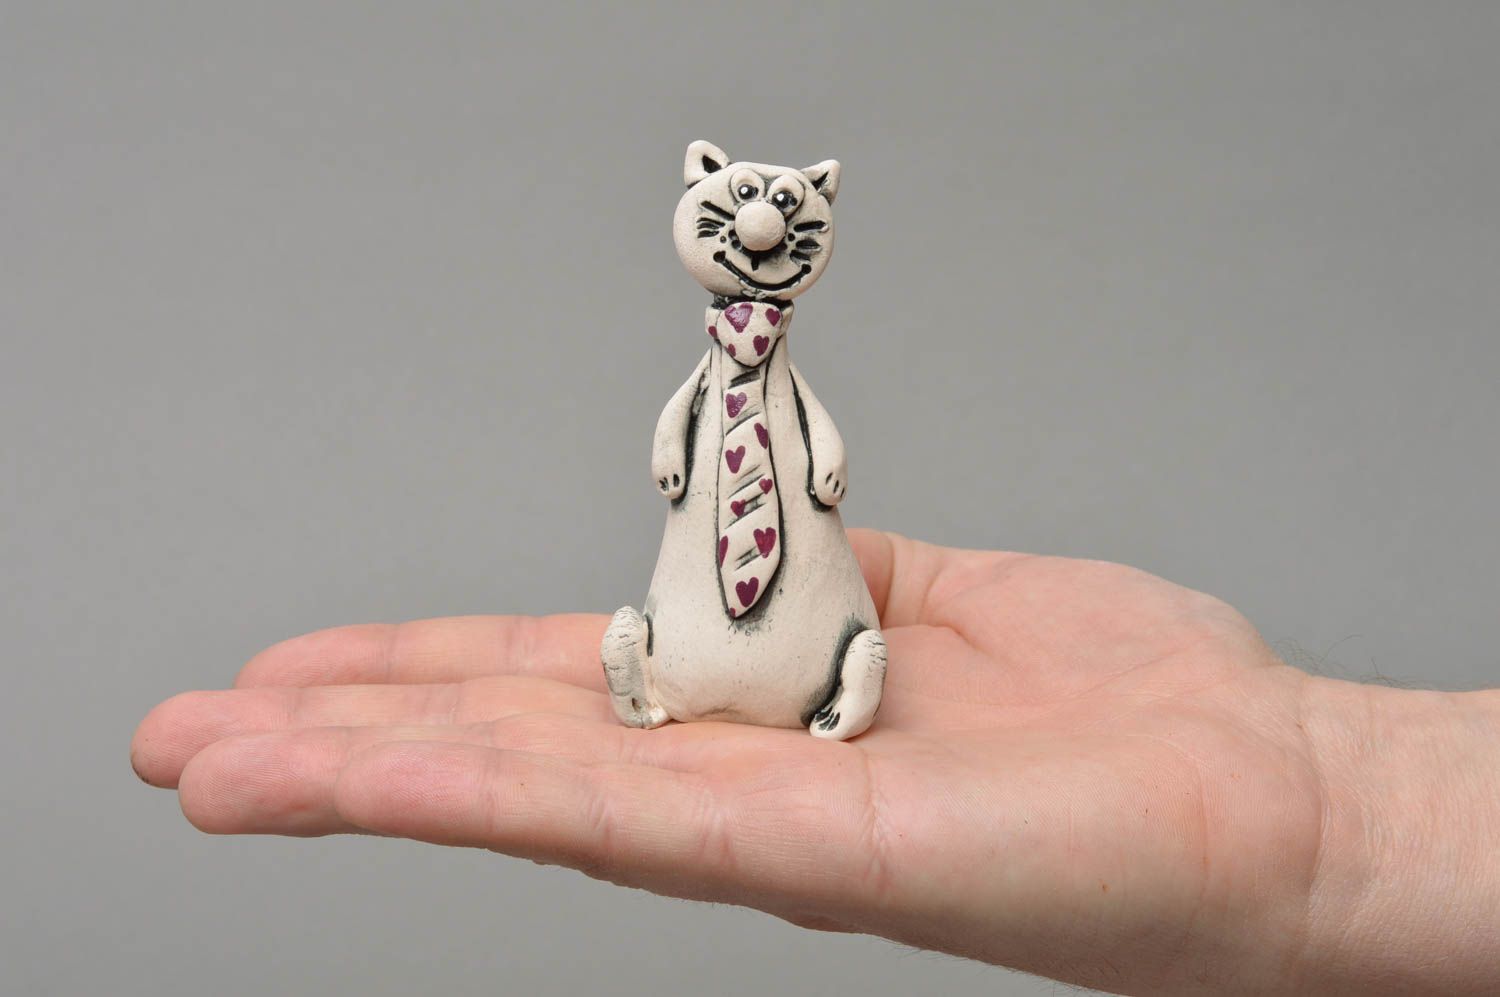 Фарфоровая статуэтка расписанная глазурью и акрилом хэнд мэйд Кот в галстуке фото 4